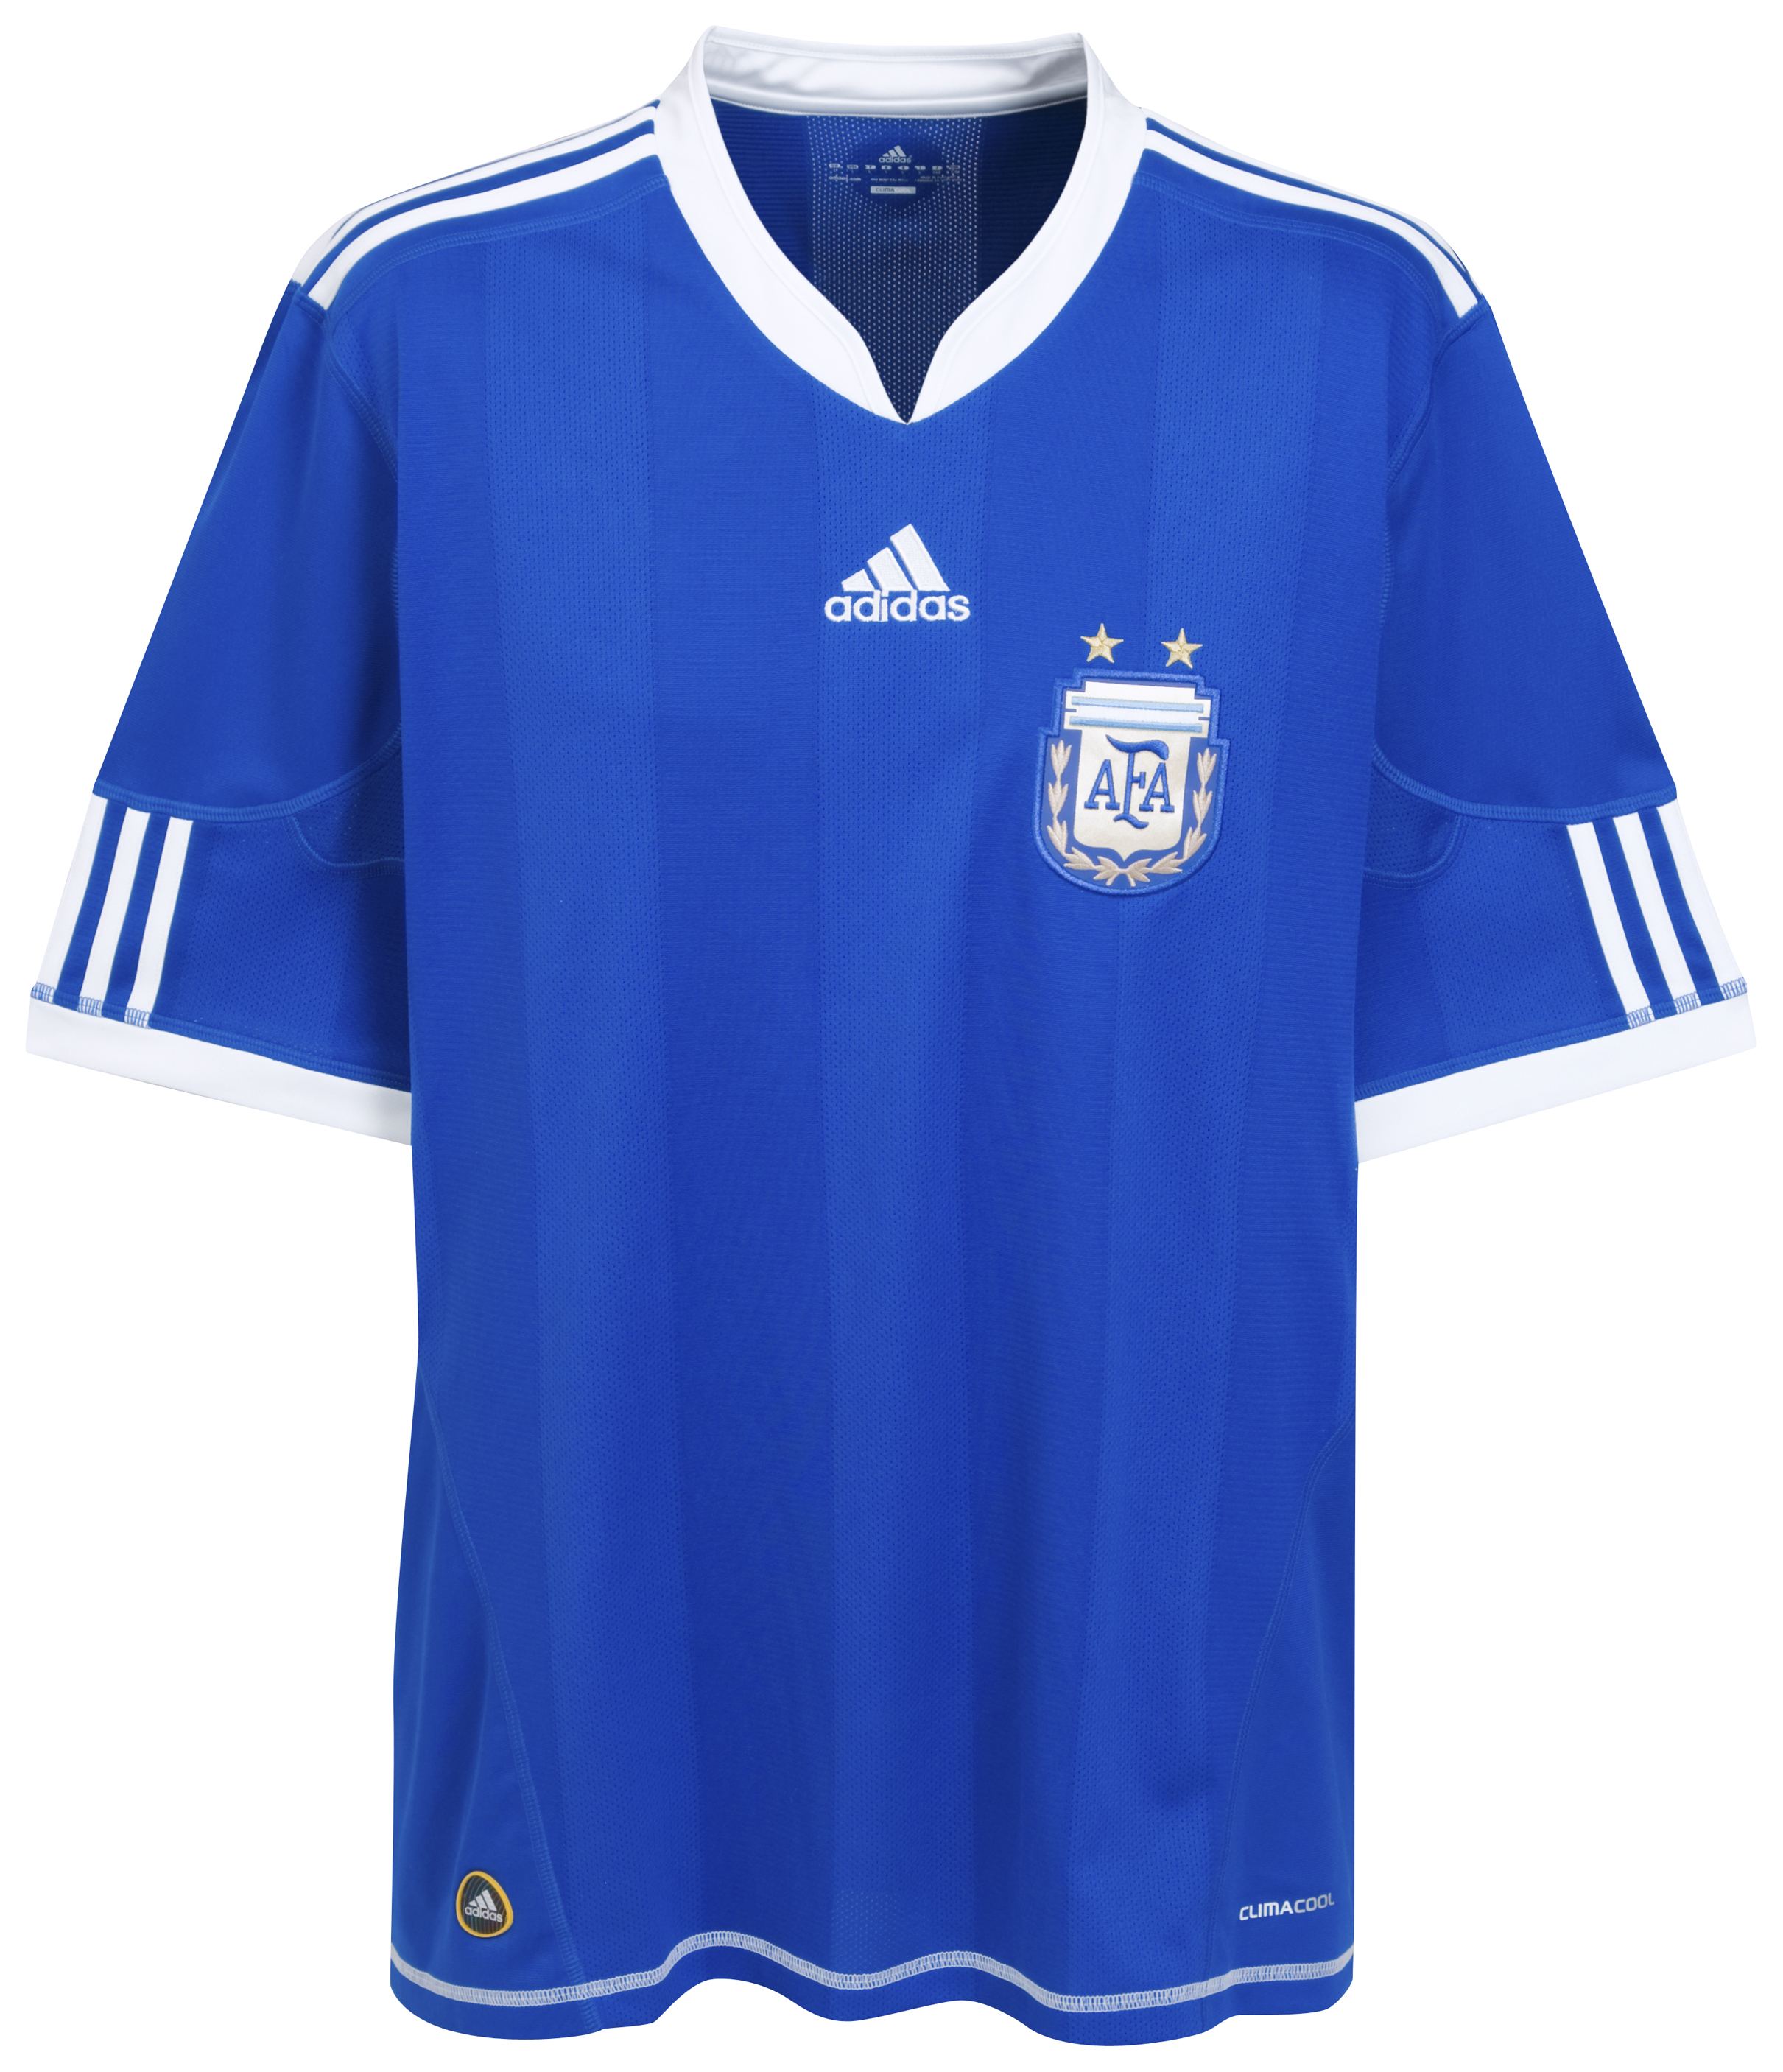 الملابس النهائيه لكأس العالم (2010) Kb-66925